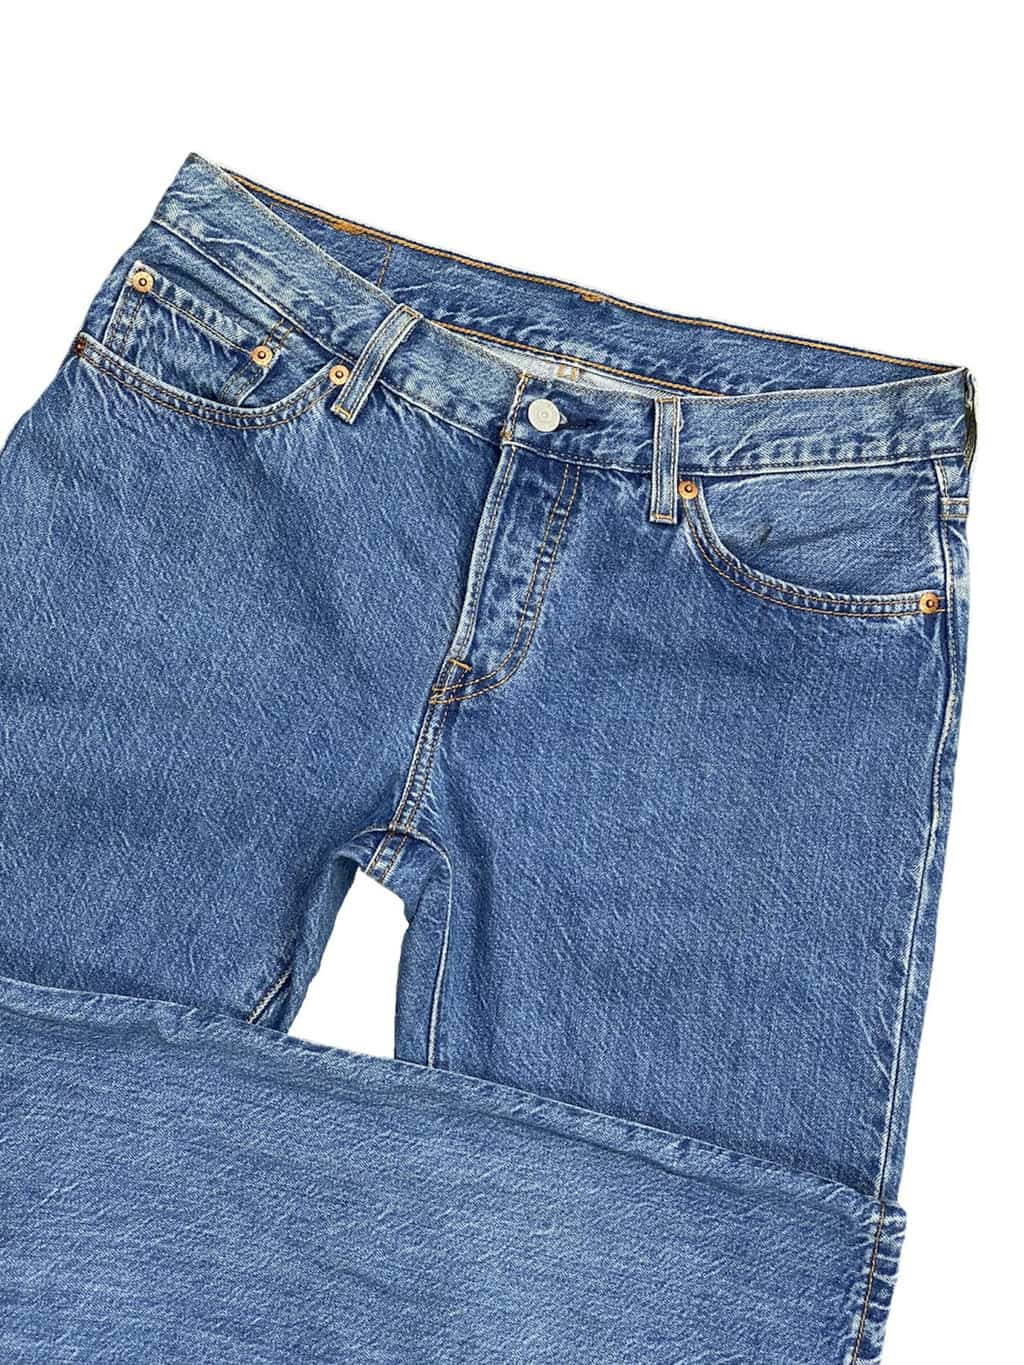 Levis 501 CT Jeans in Blue Stonewashed Denim - St Cyr Vintage